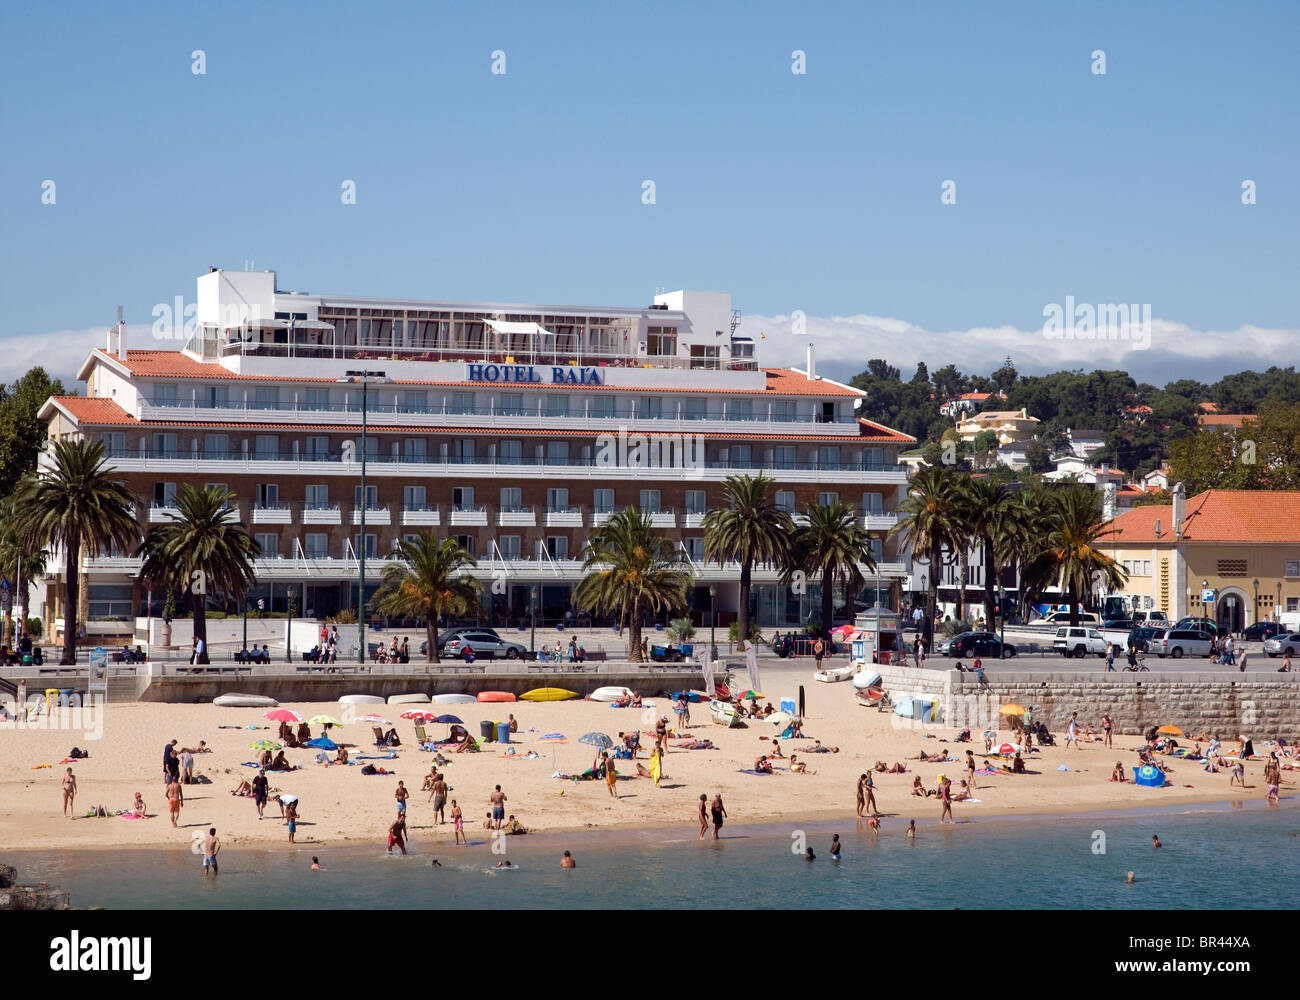 Lucertole da mare sulla spiaggia di Cascais, una cittadina vicino a Lisbona, Portogallo. Il tre stelle Hotel Baia si affaccia sulla baia. Foto Stock